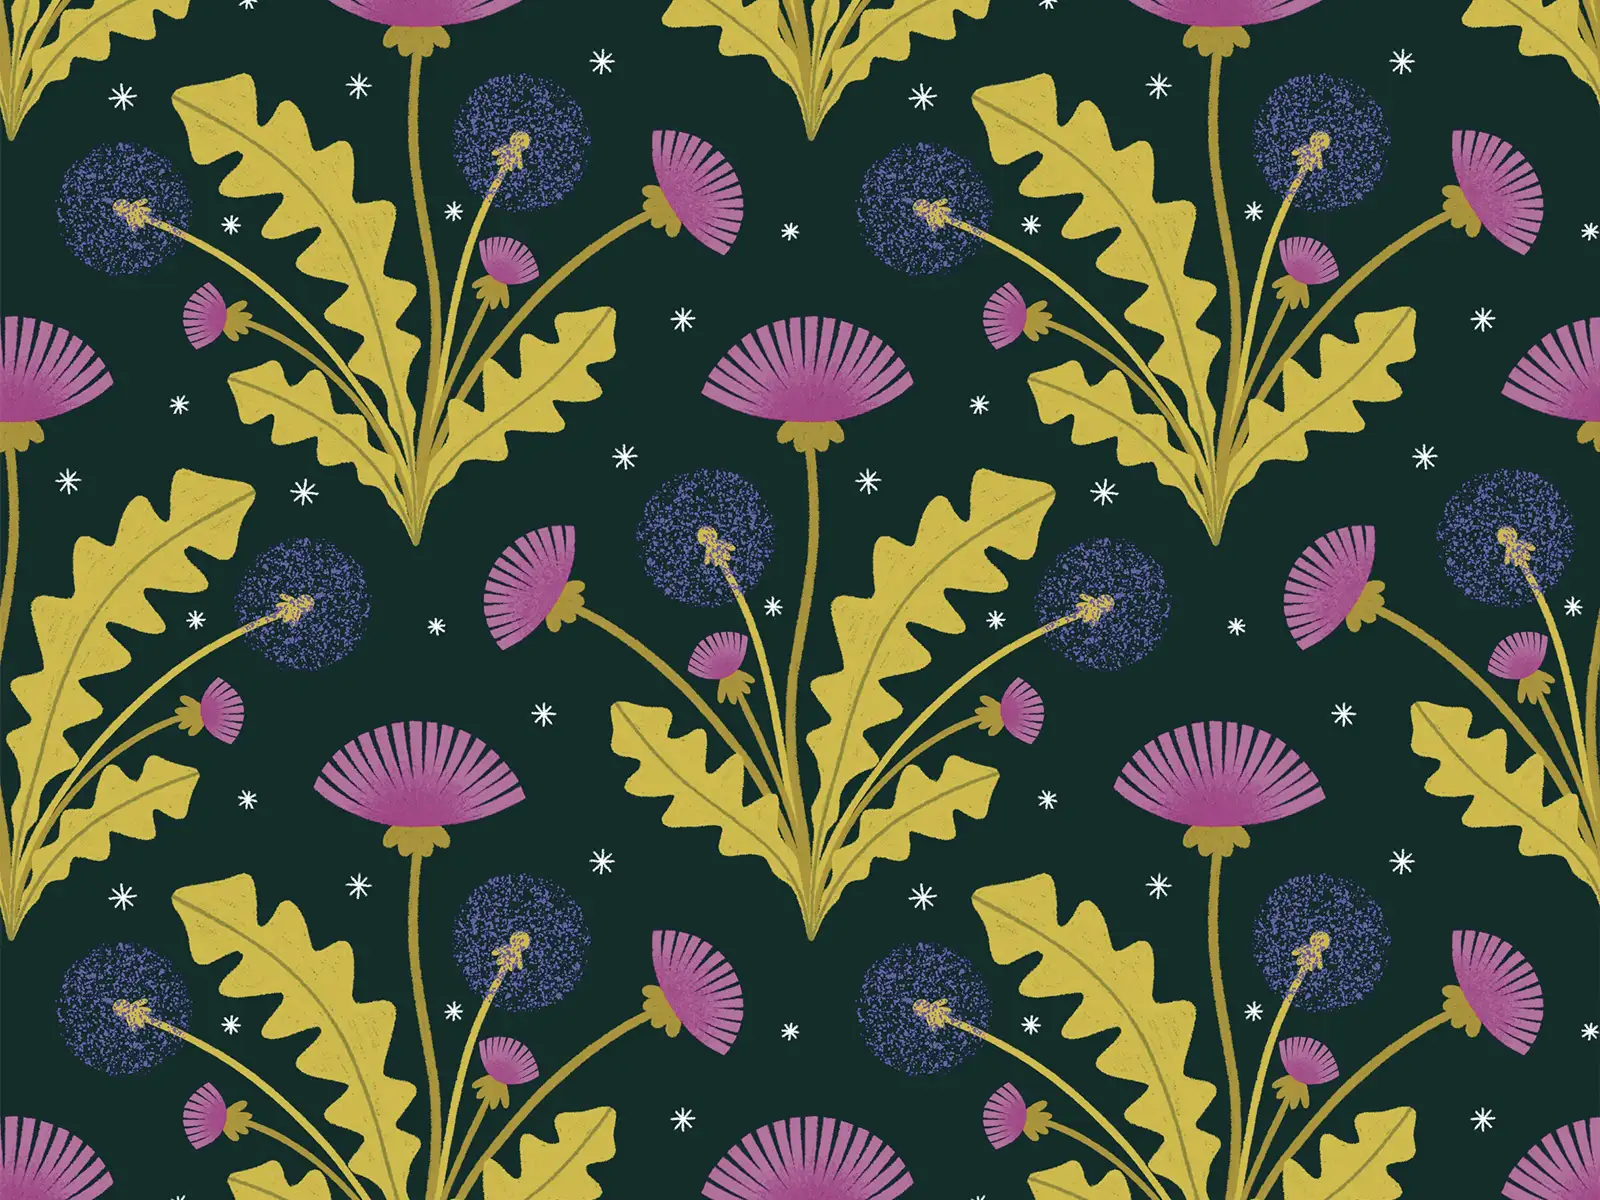 Pattern: Dandelion